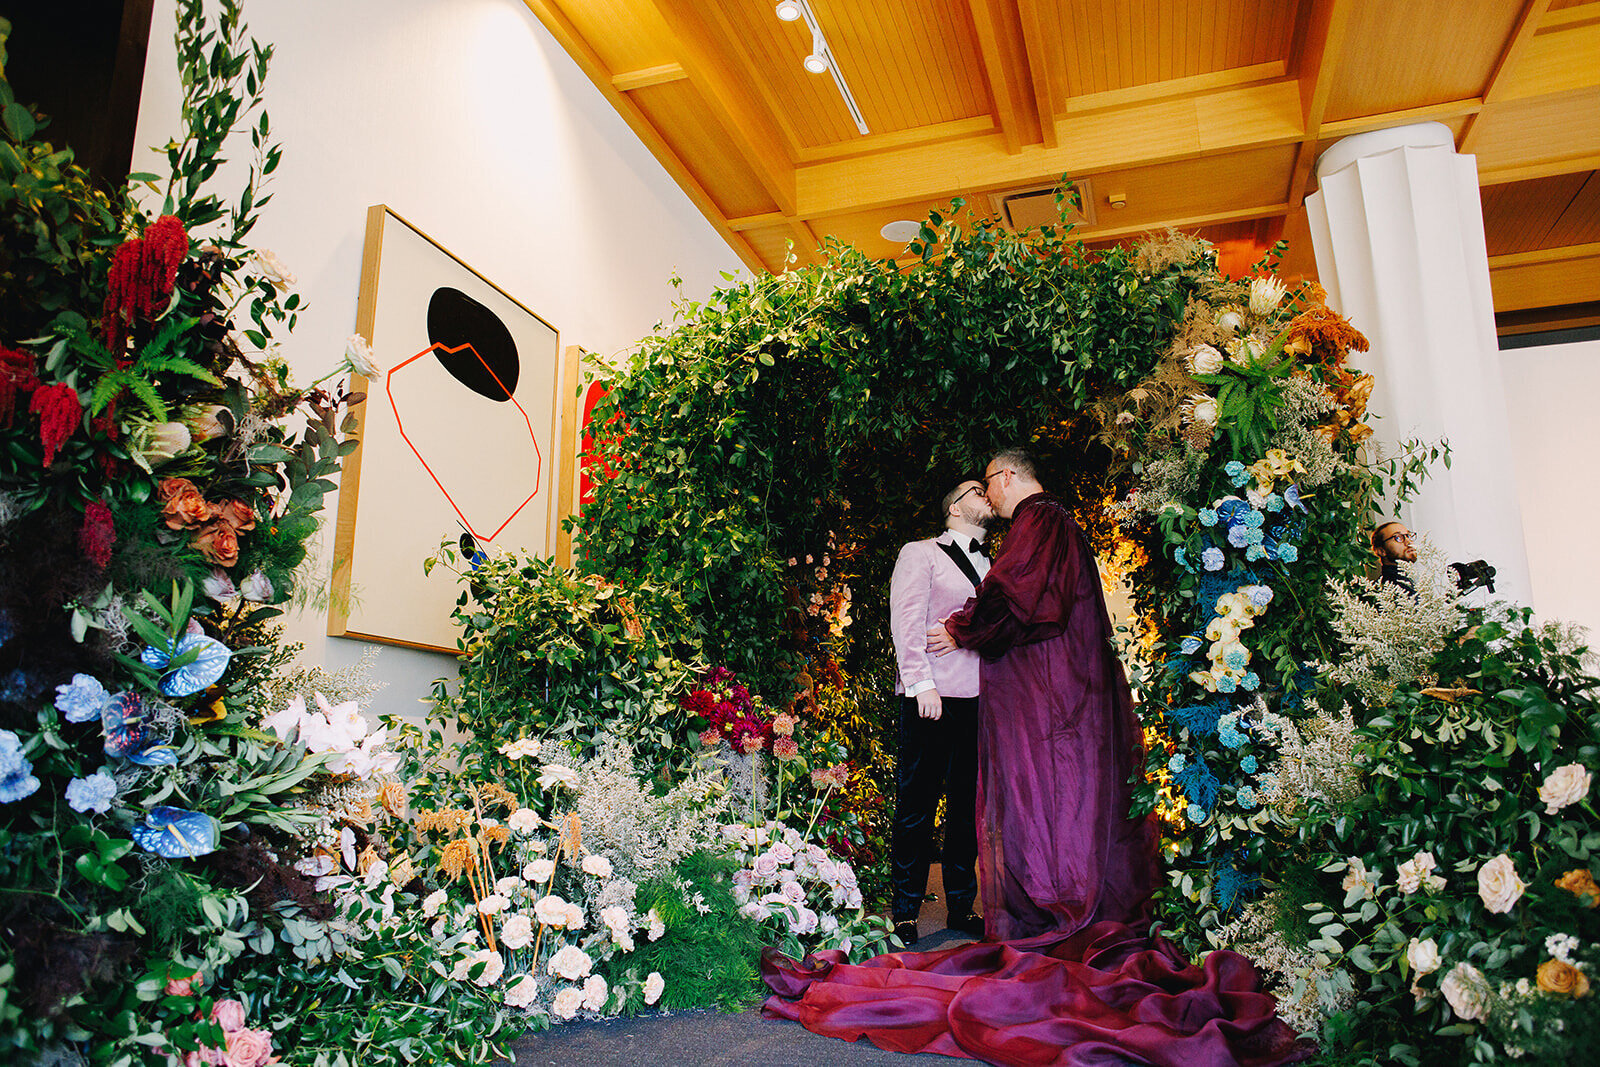 The Joseph Wedding, gay wedding, flowers by Elizabeth HBO Full Bloom